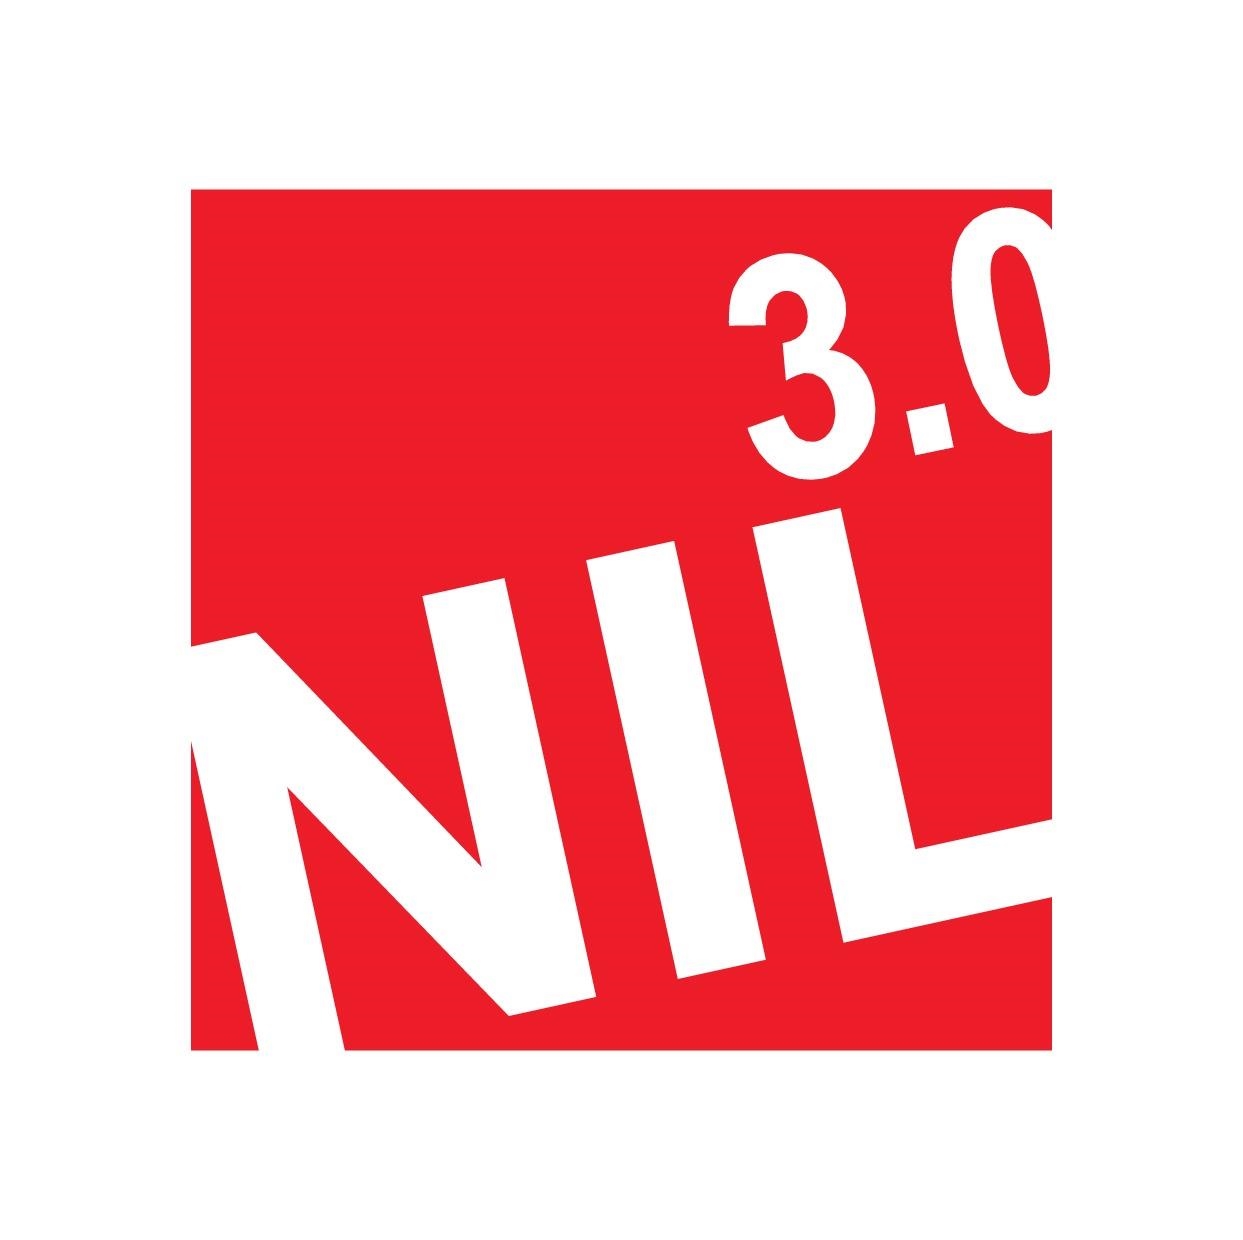 NIL 3.0